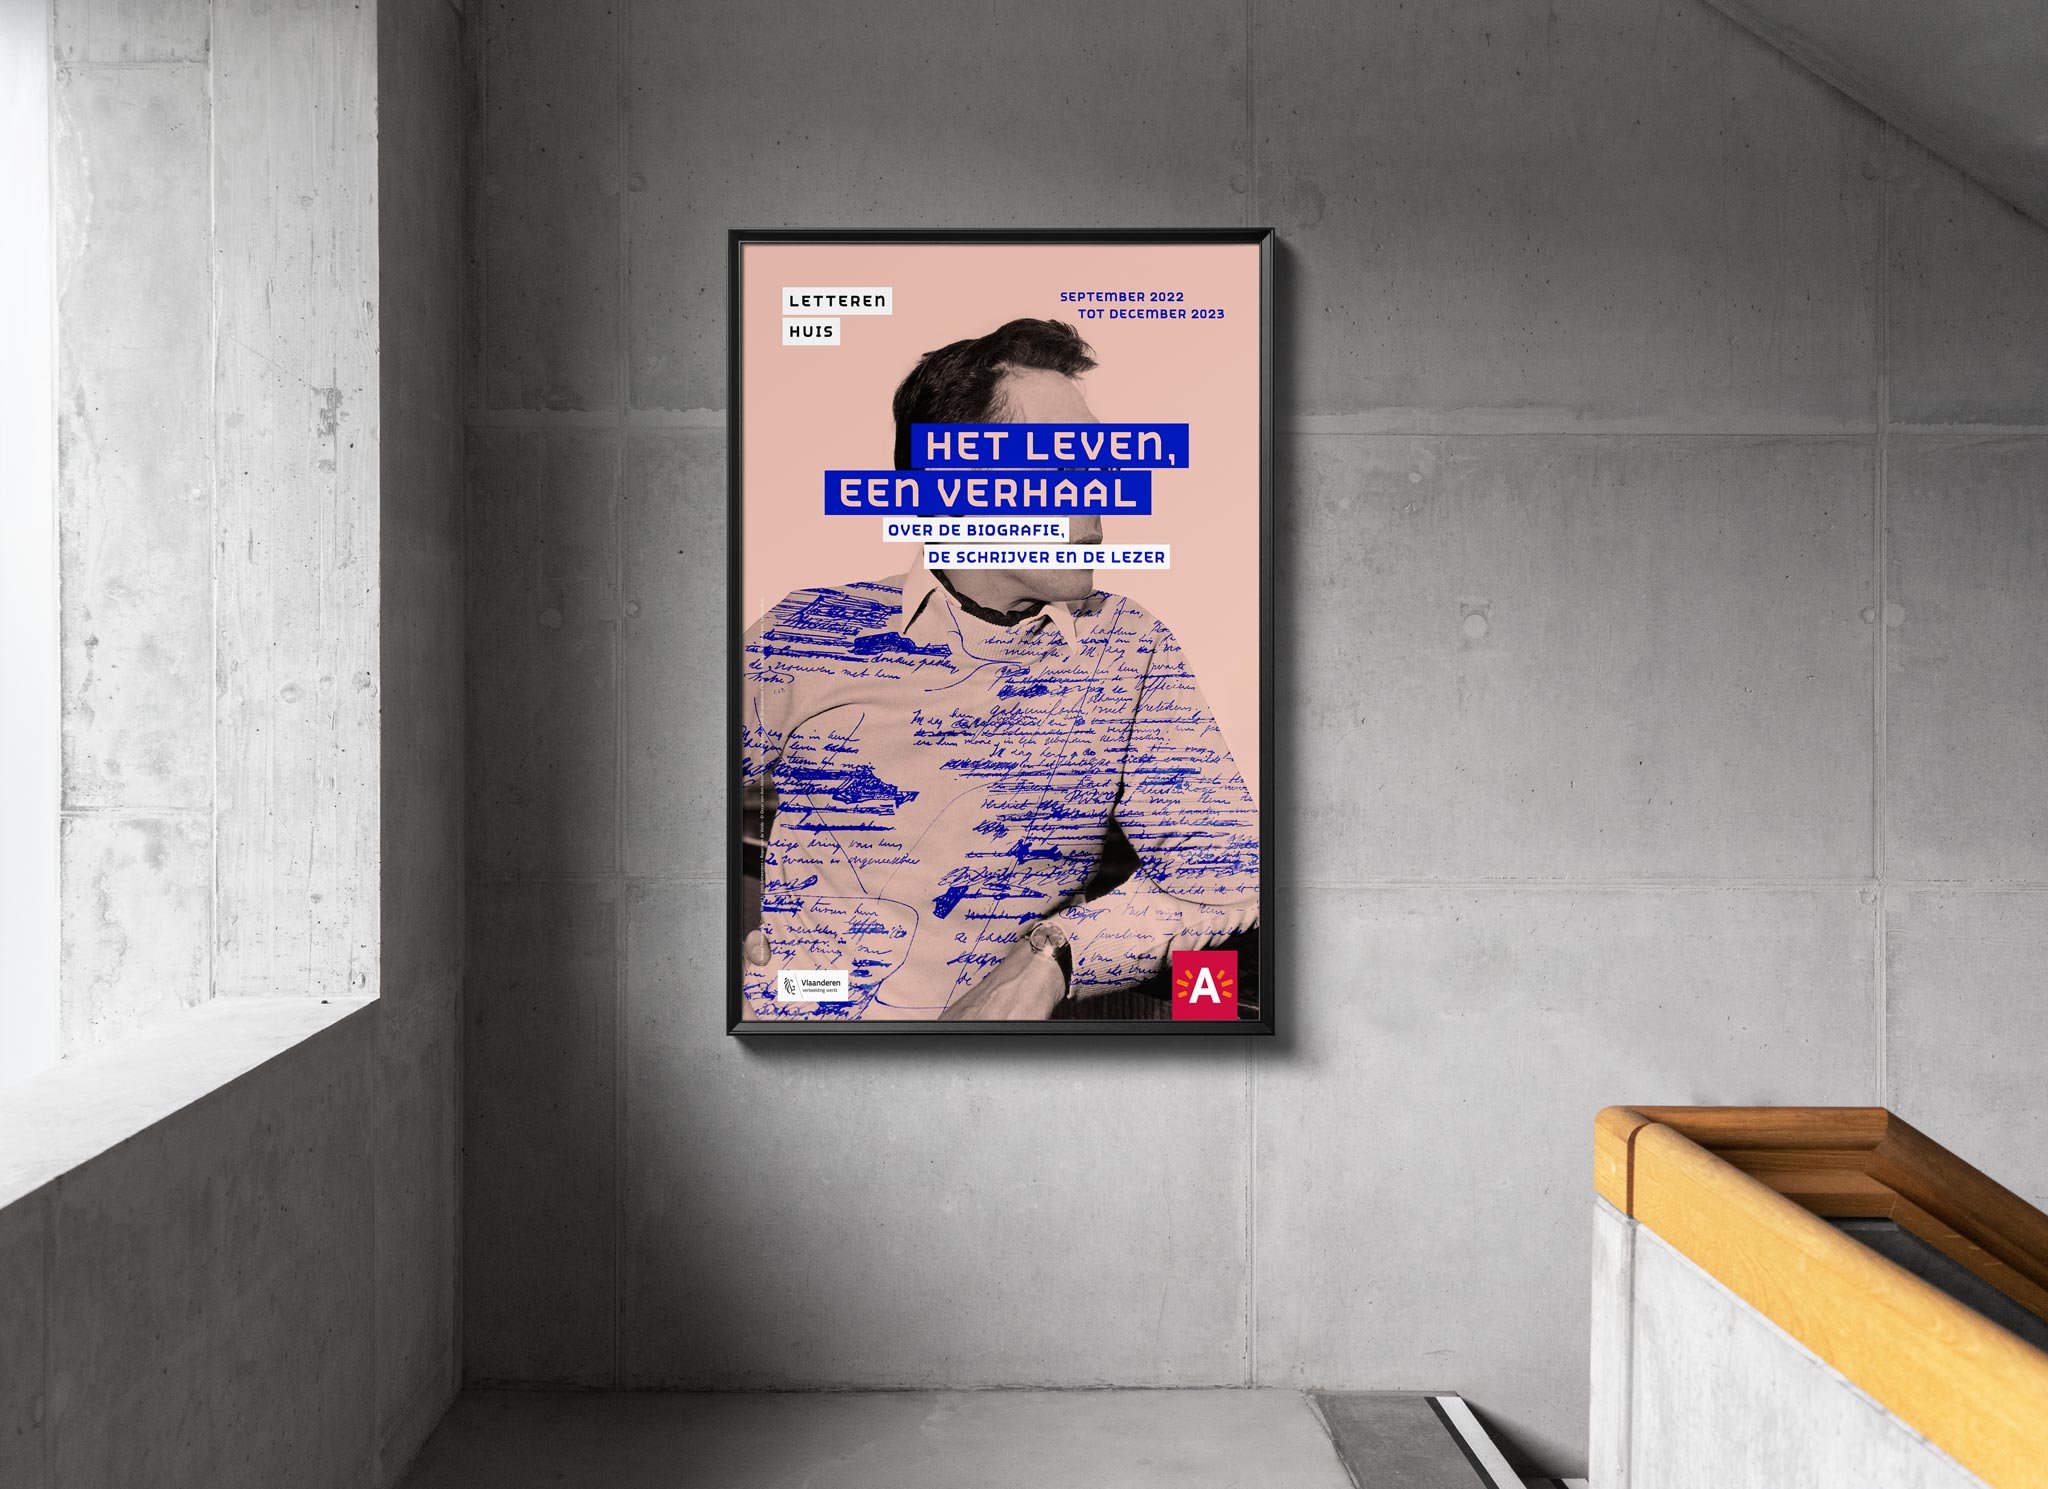 Campagne voor het biografiejaar in het Letterenhuis, Antwerpen. Het leven, een verhaal. Over de biografie, de schrijver en de lezer.